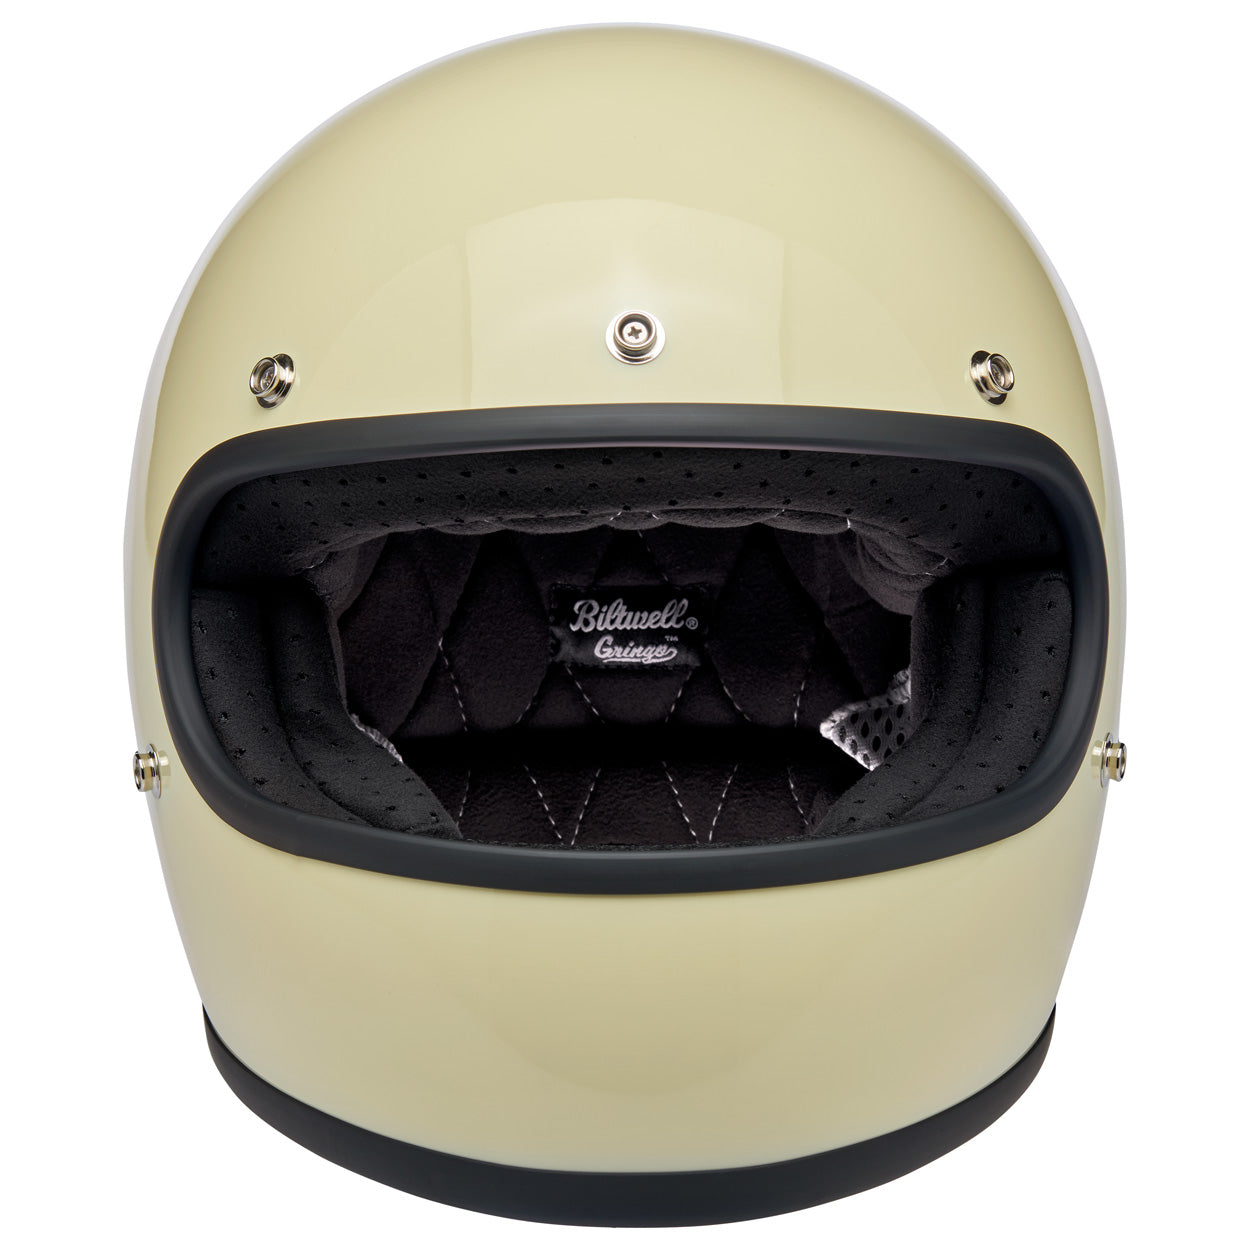 CLOSEOUT Gringo ECE R22.05 Helmet - Gloss Vintage White